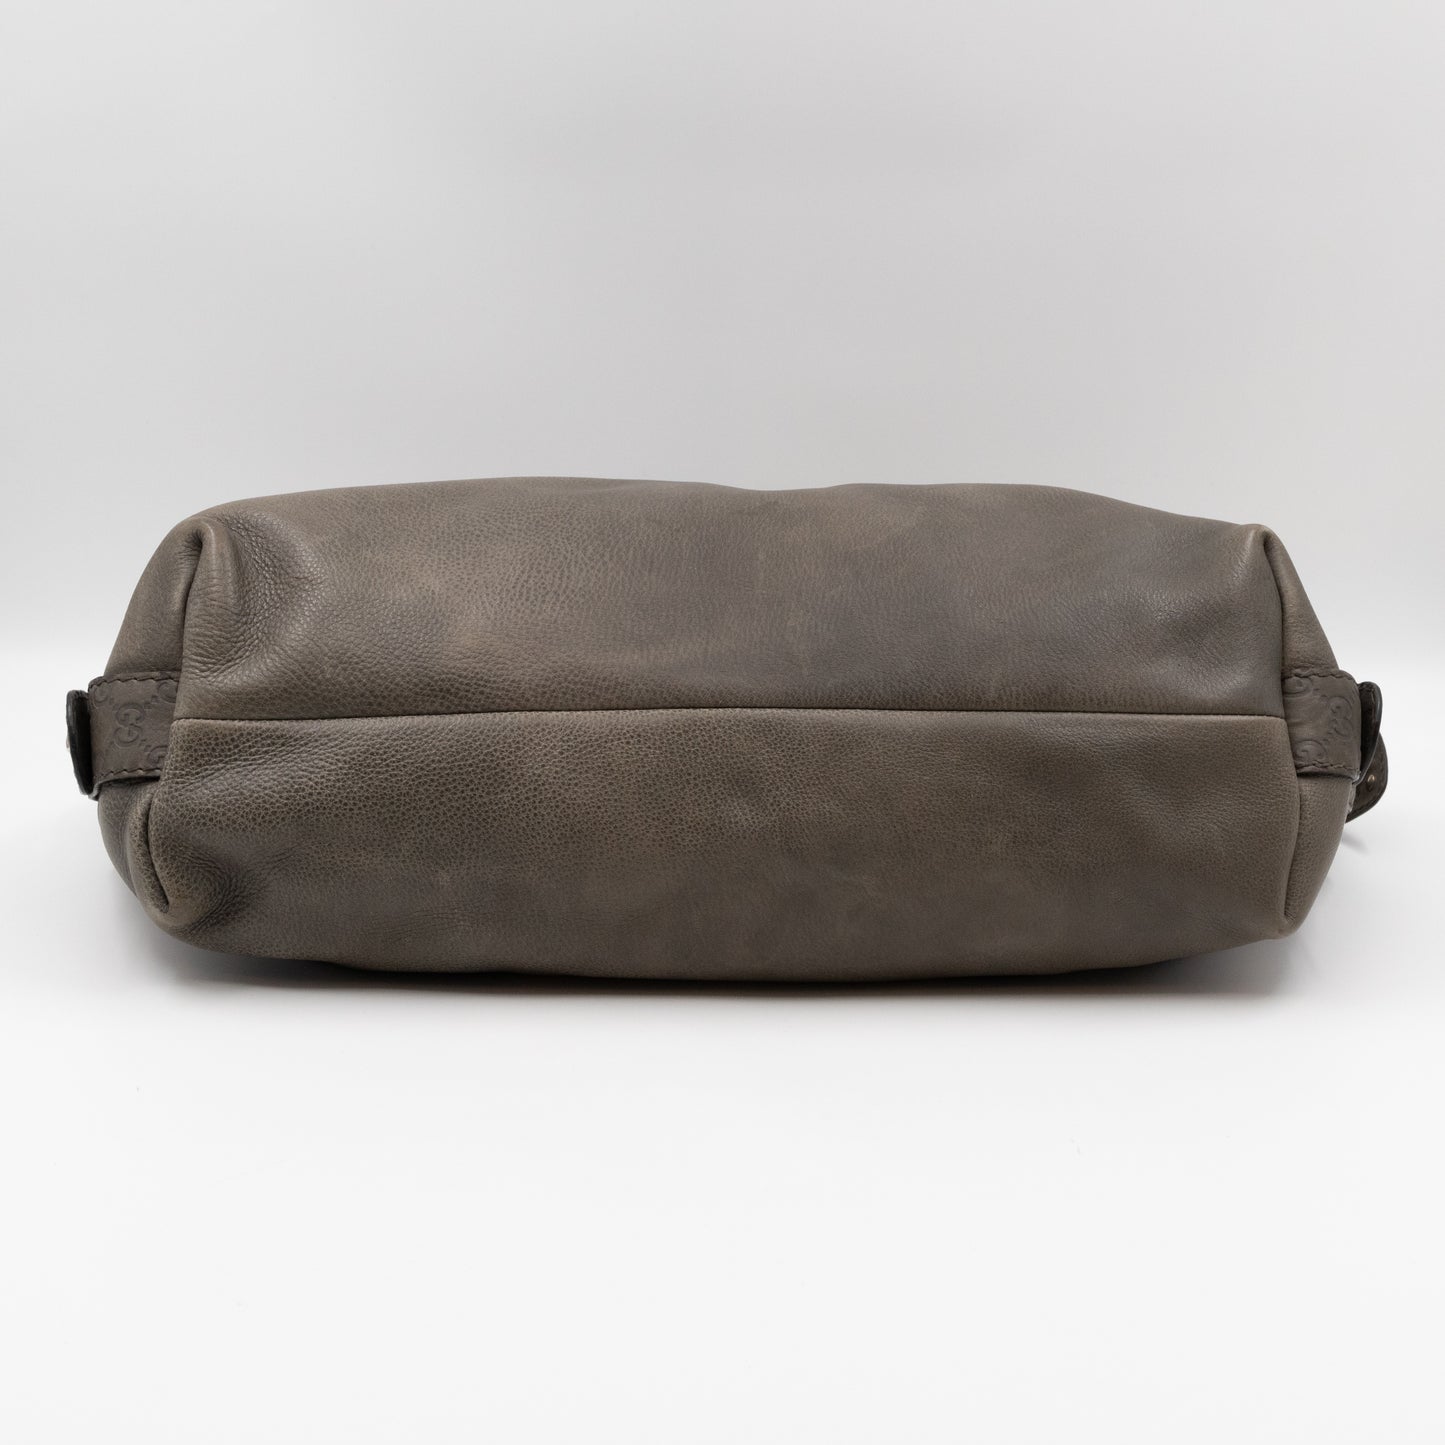 Bamboo Bar Shoulder Bag Grey Leather